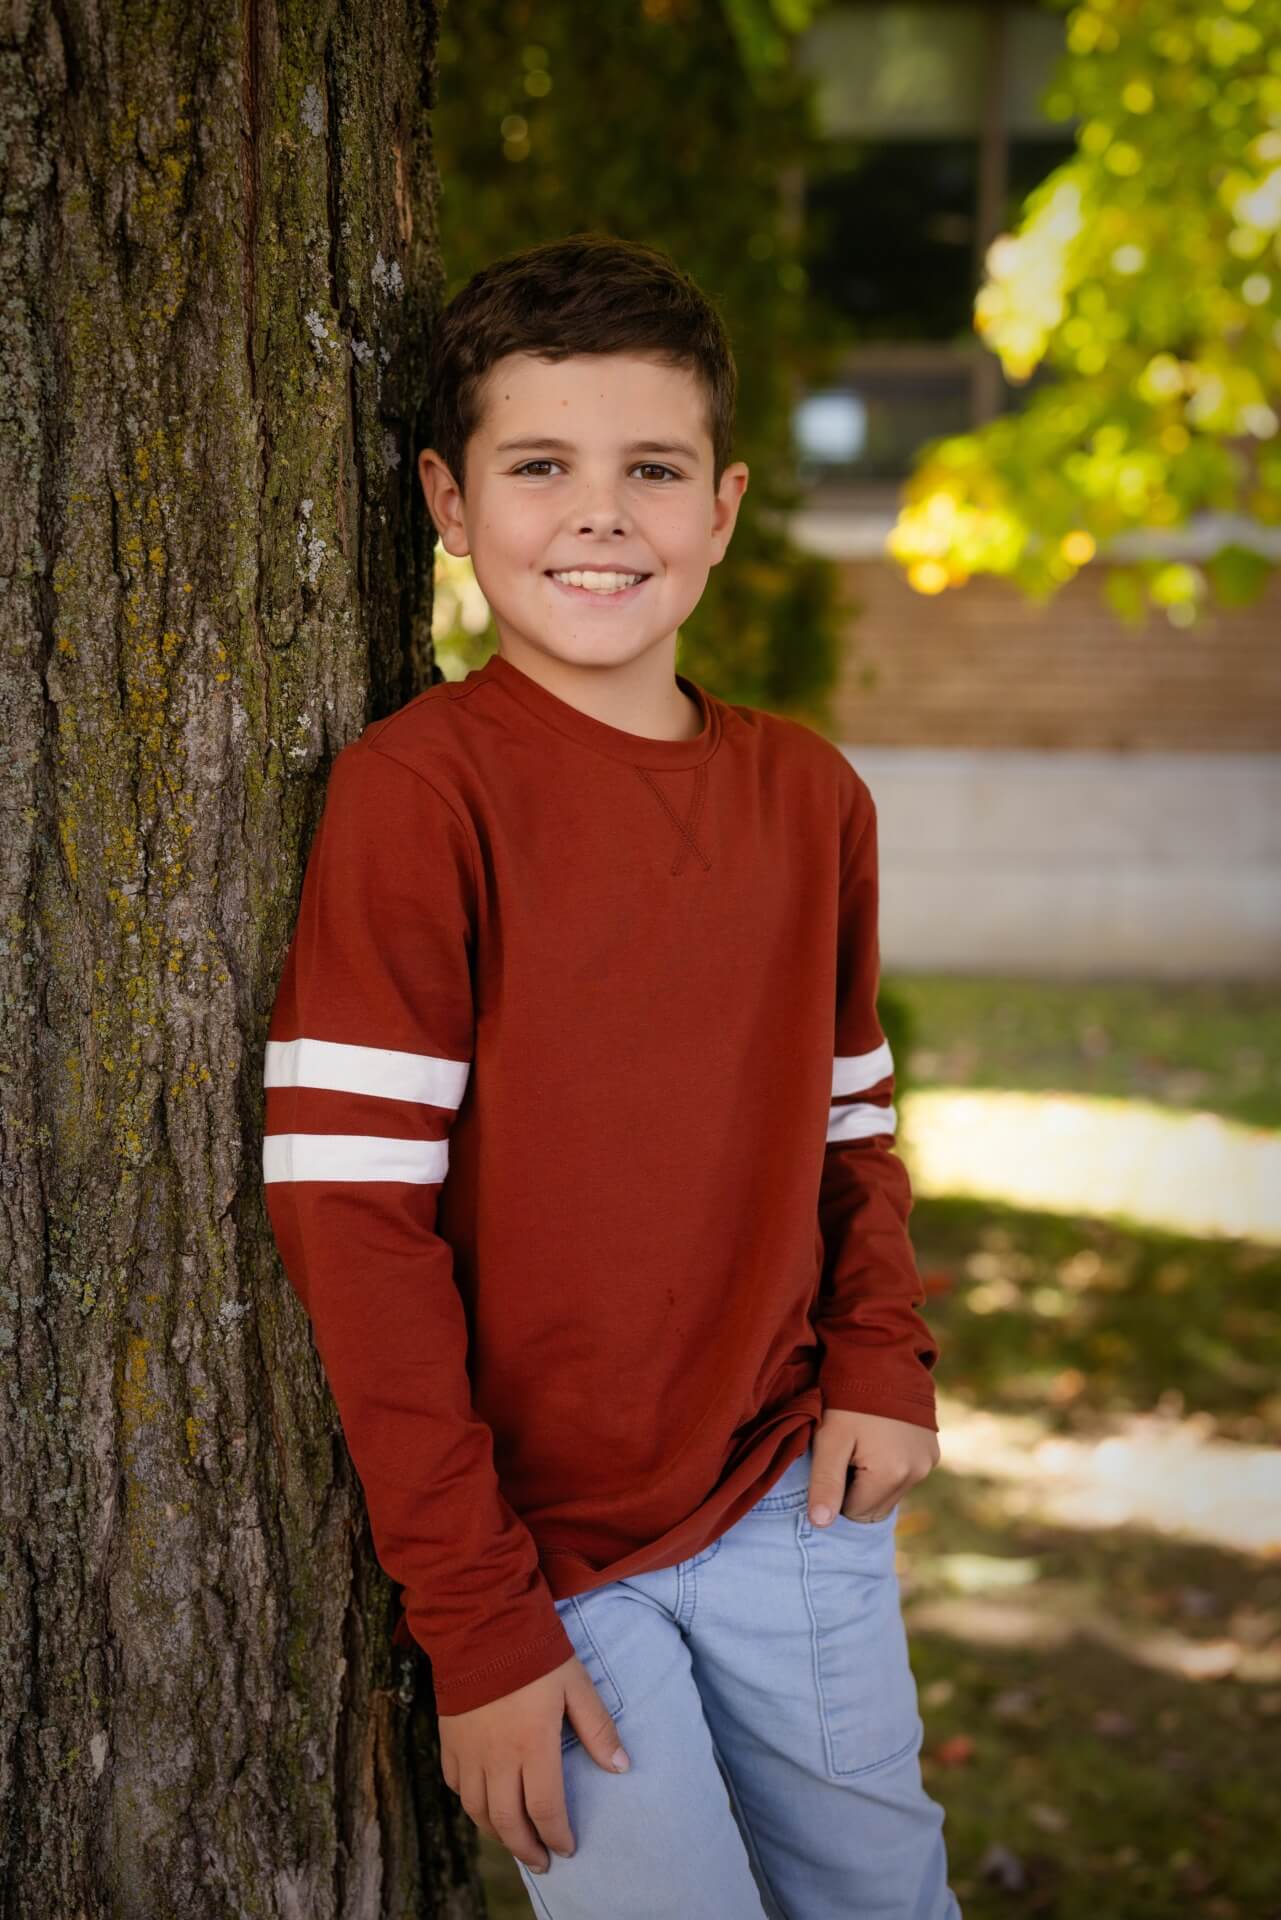 Un jeune garçon posant contre un arbre pour un photographe, capturant l'instant à des tarifs abordables.